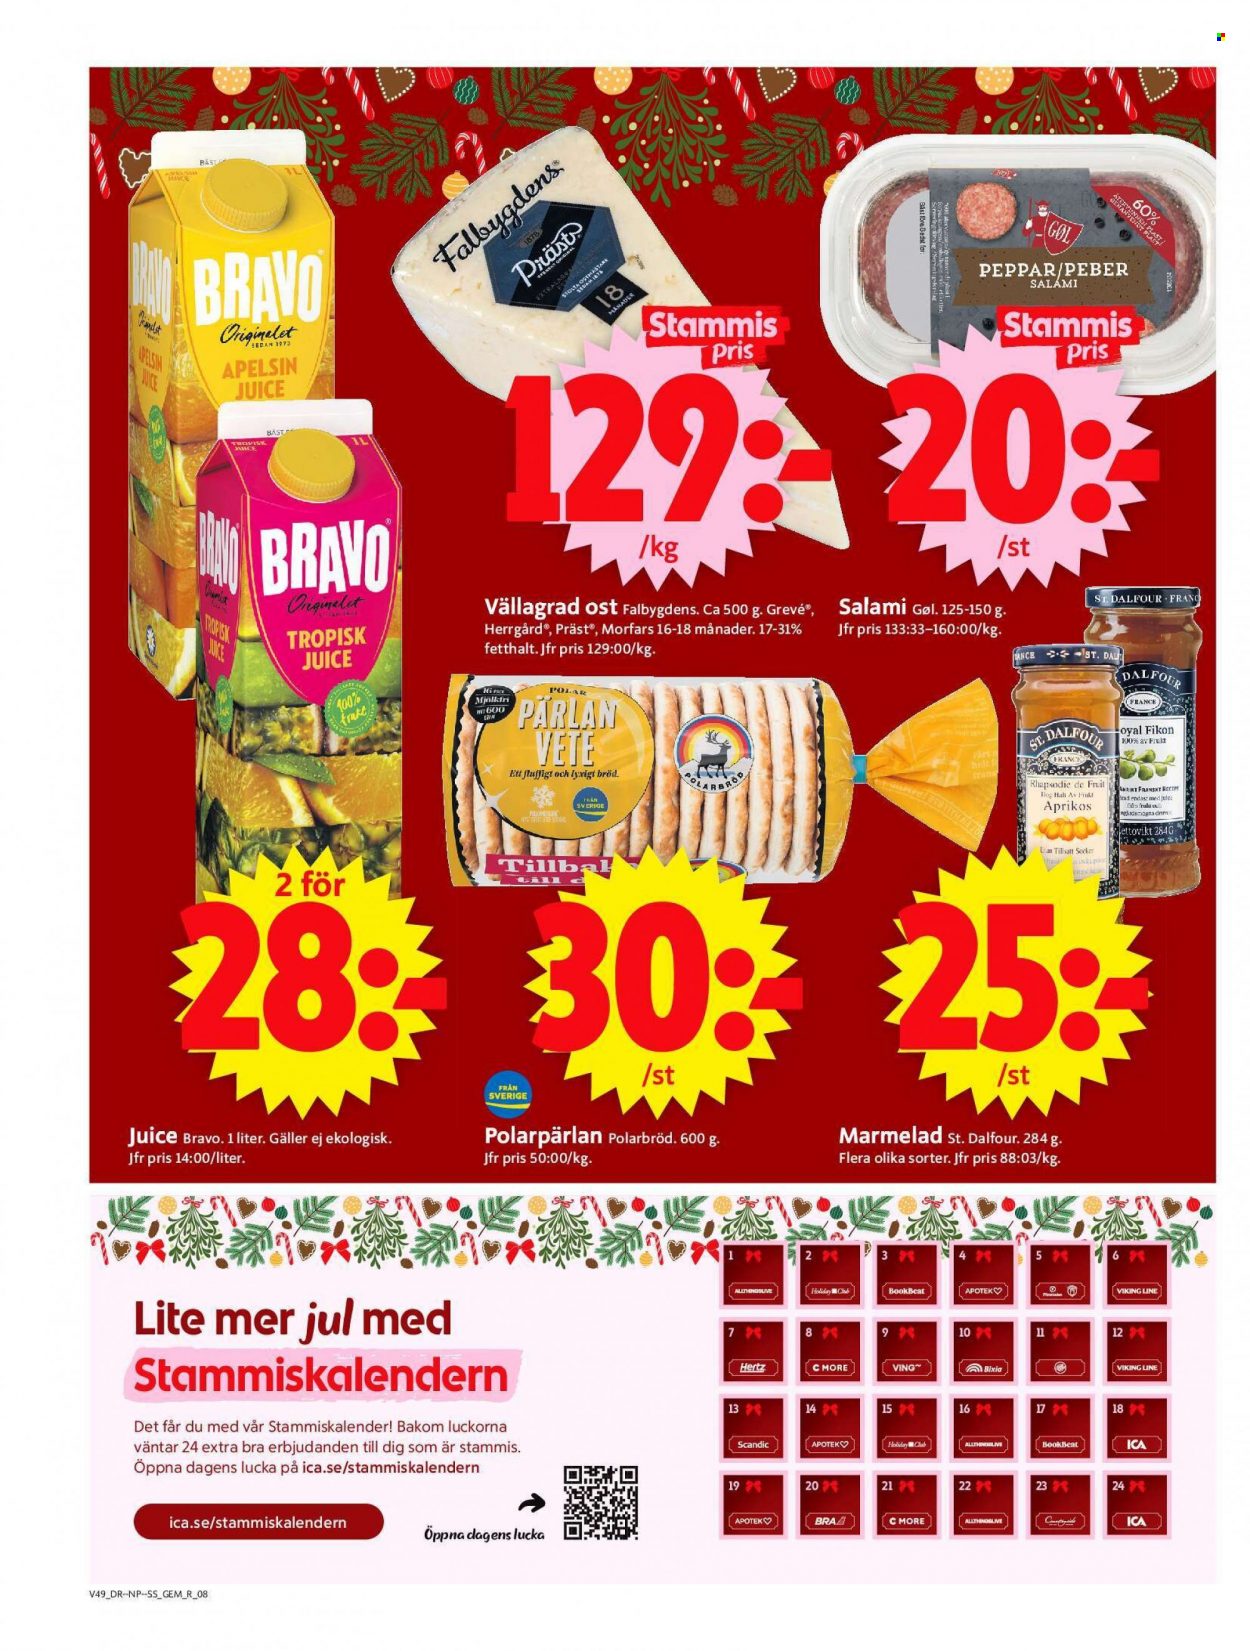 thumbnail - ICA reklamblad - 5/12 2022 - 11/12 2022 - varor från reklamblad - bröd, Polarbröd, salami, ost, Präst, Grevé, Herrgård, marmelad, juice. Sida 8.